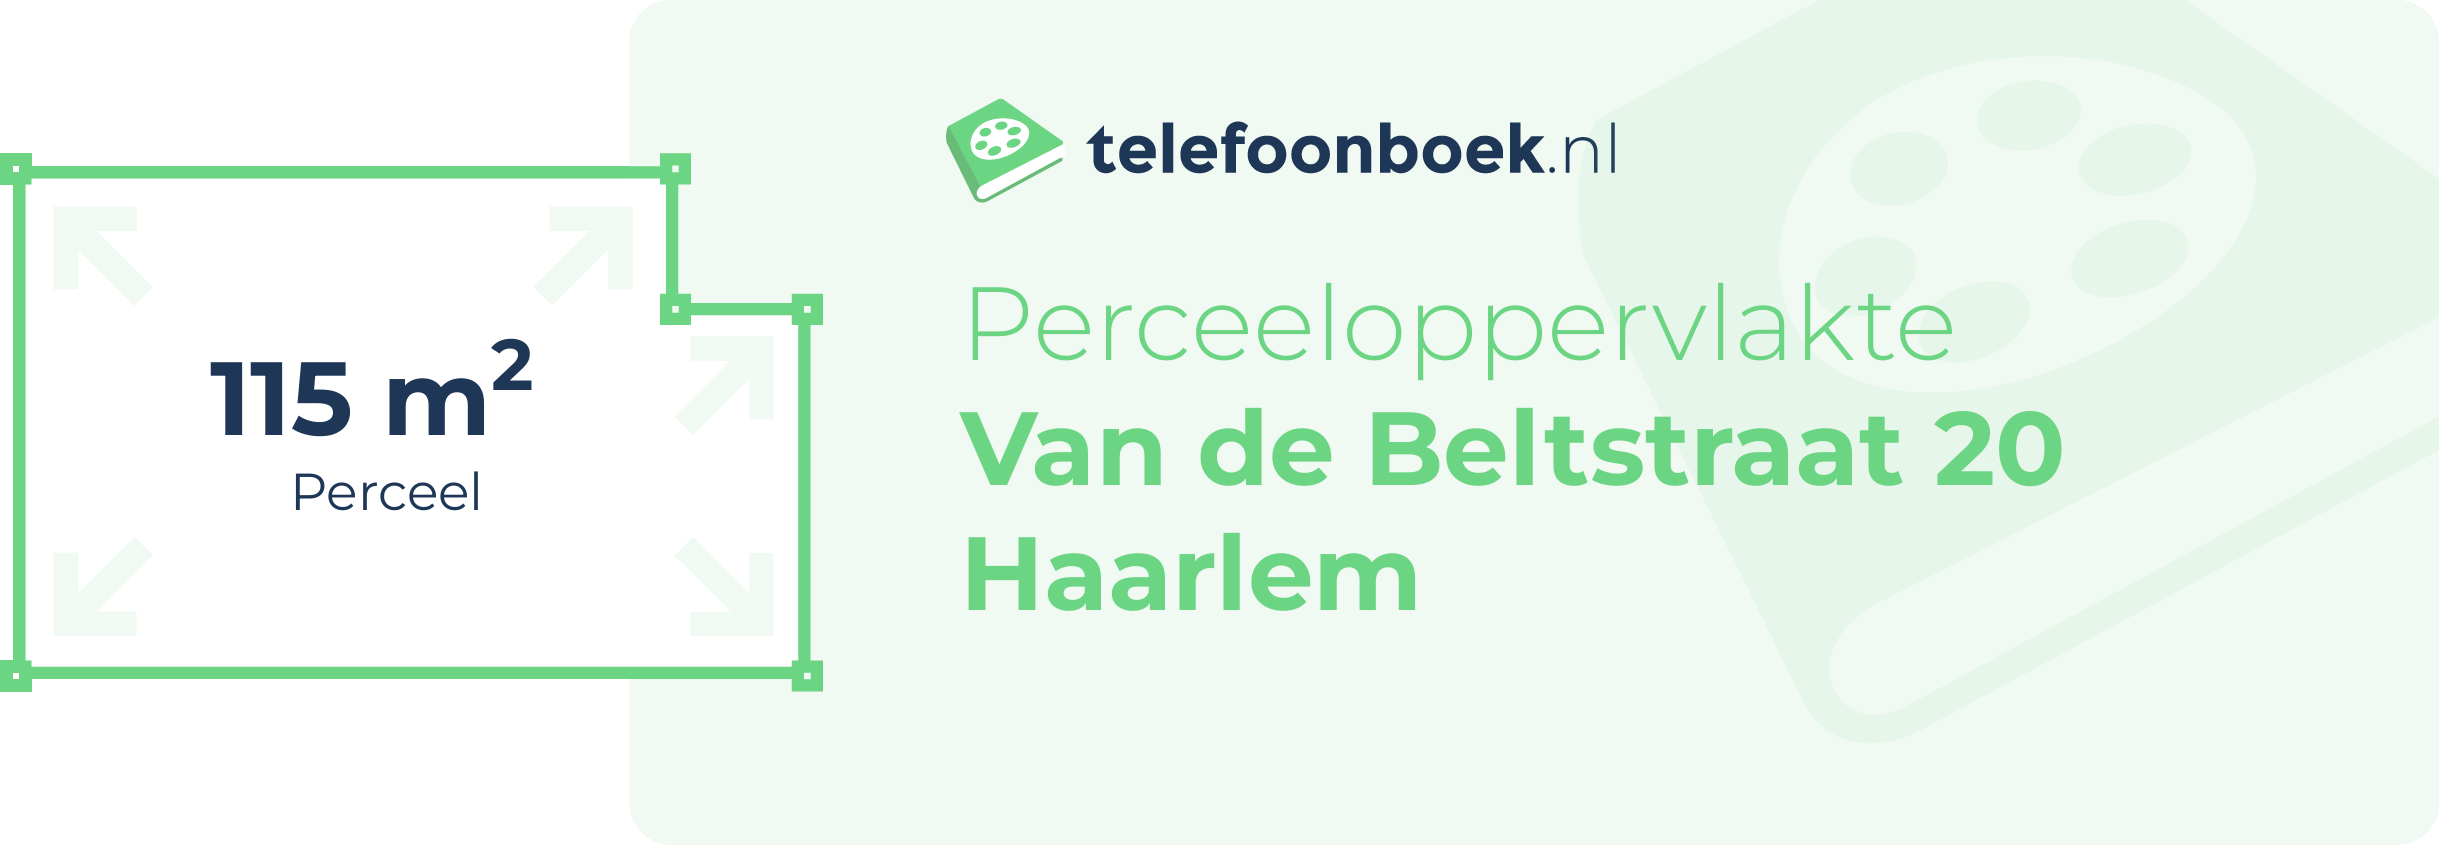 Perceeloppervlakte Van De Beltstraat 20 Haarlem